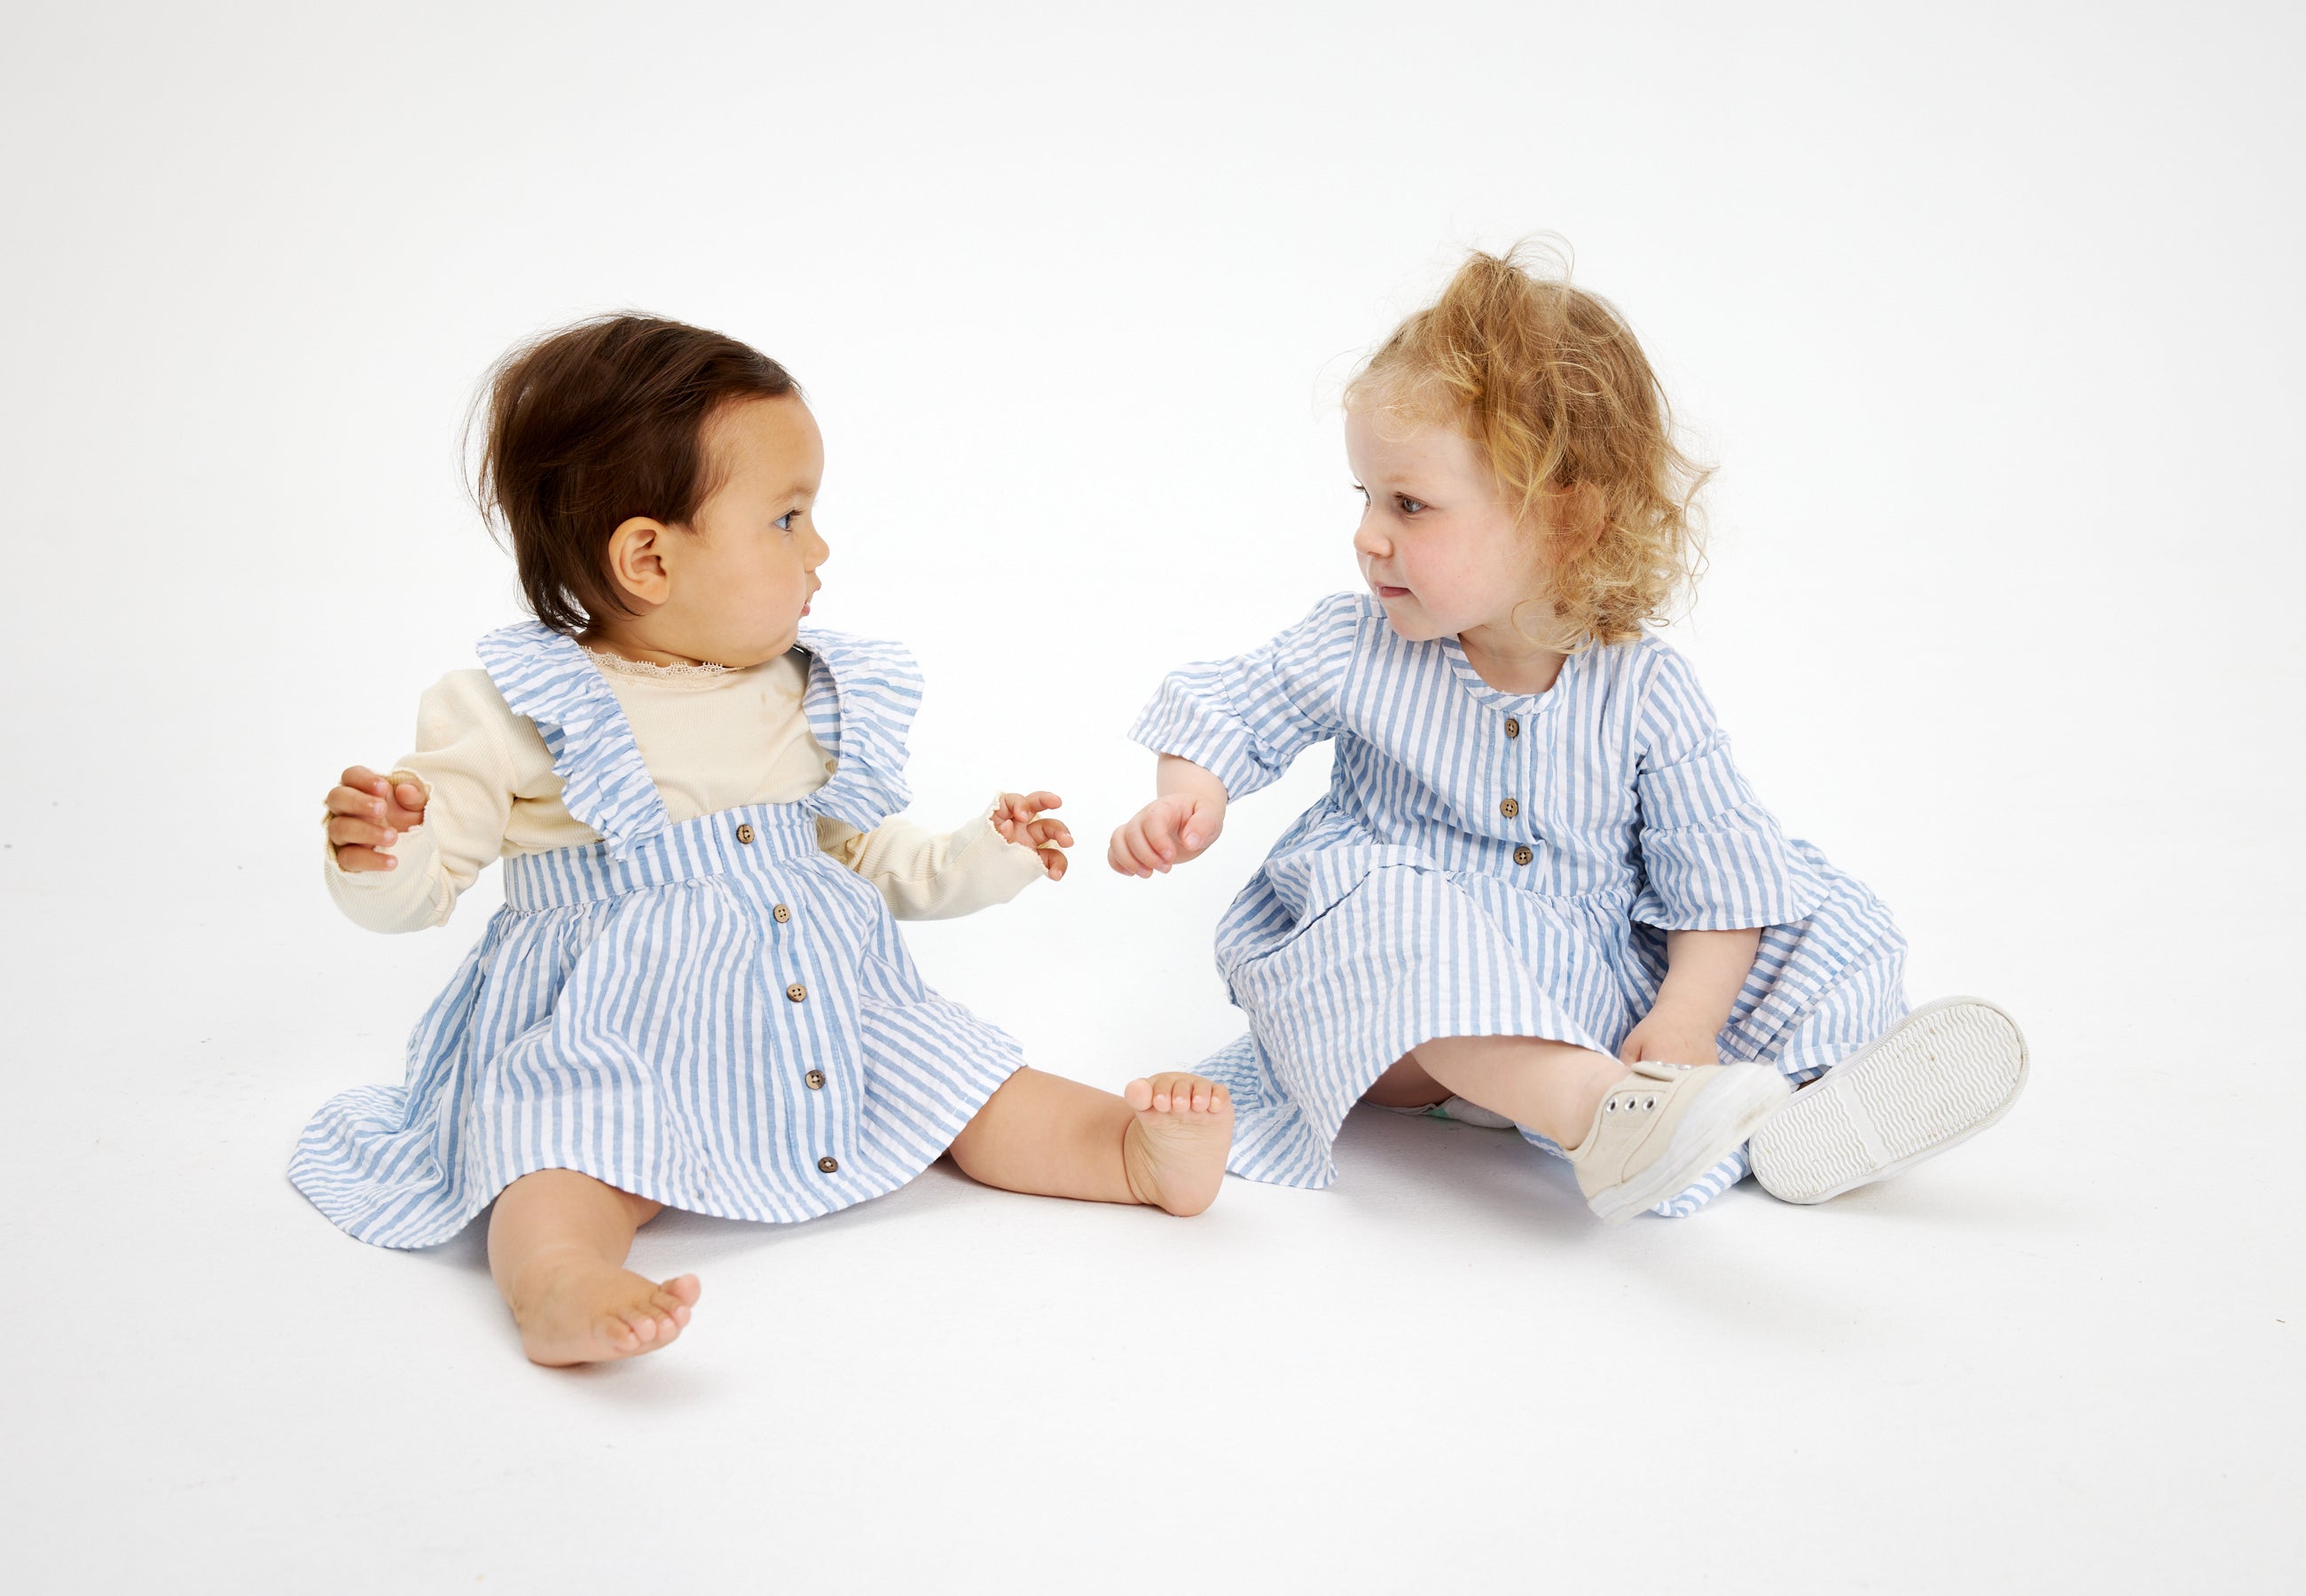 Shop børnetøj til børn i alderen 0-4 år. Her hos THE NEW siblings finder du bl.a. nye styles fra Summer 24 kollektionen